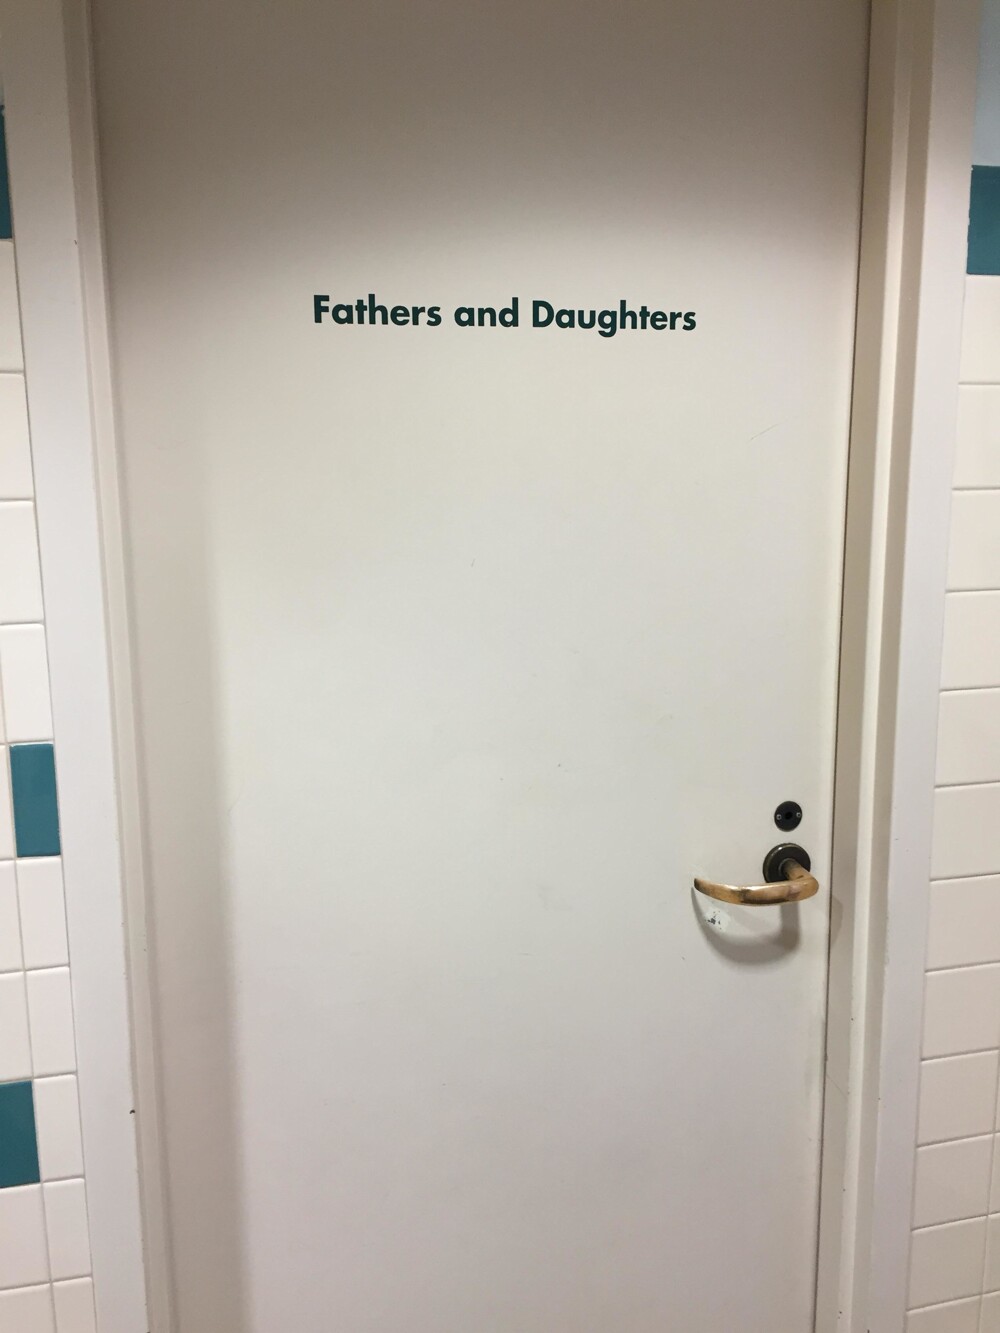 2. В одном зоопарке есть отдельная туалетная комната только для пап, которые приходят со своими маленькими дочерьми